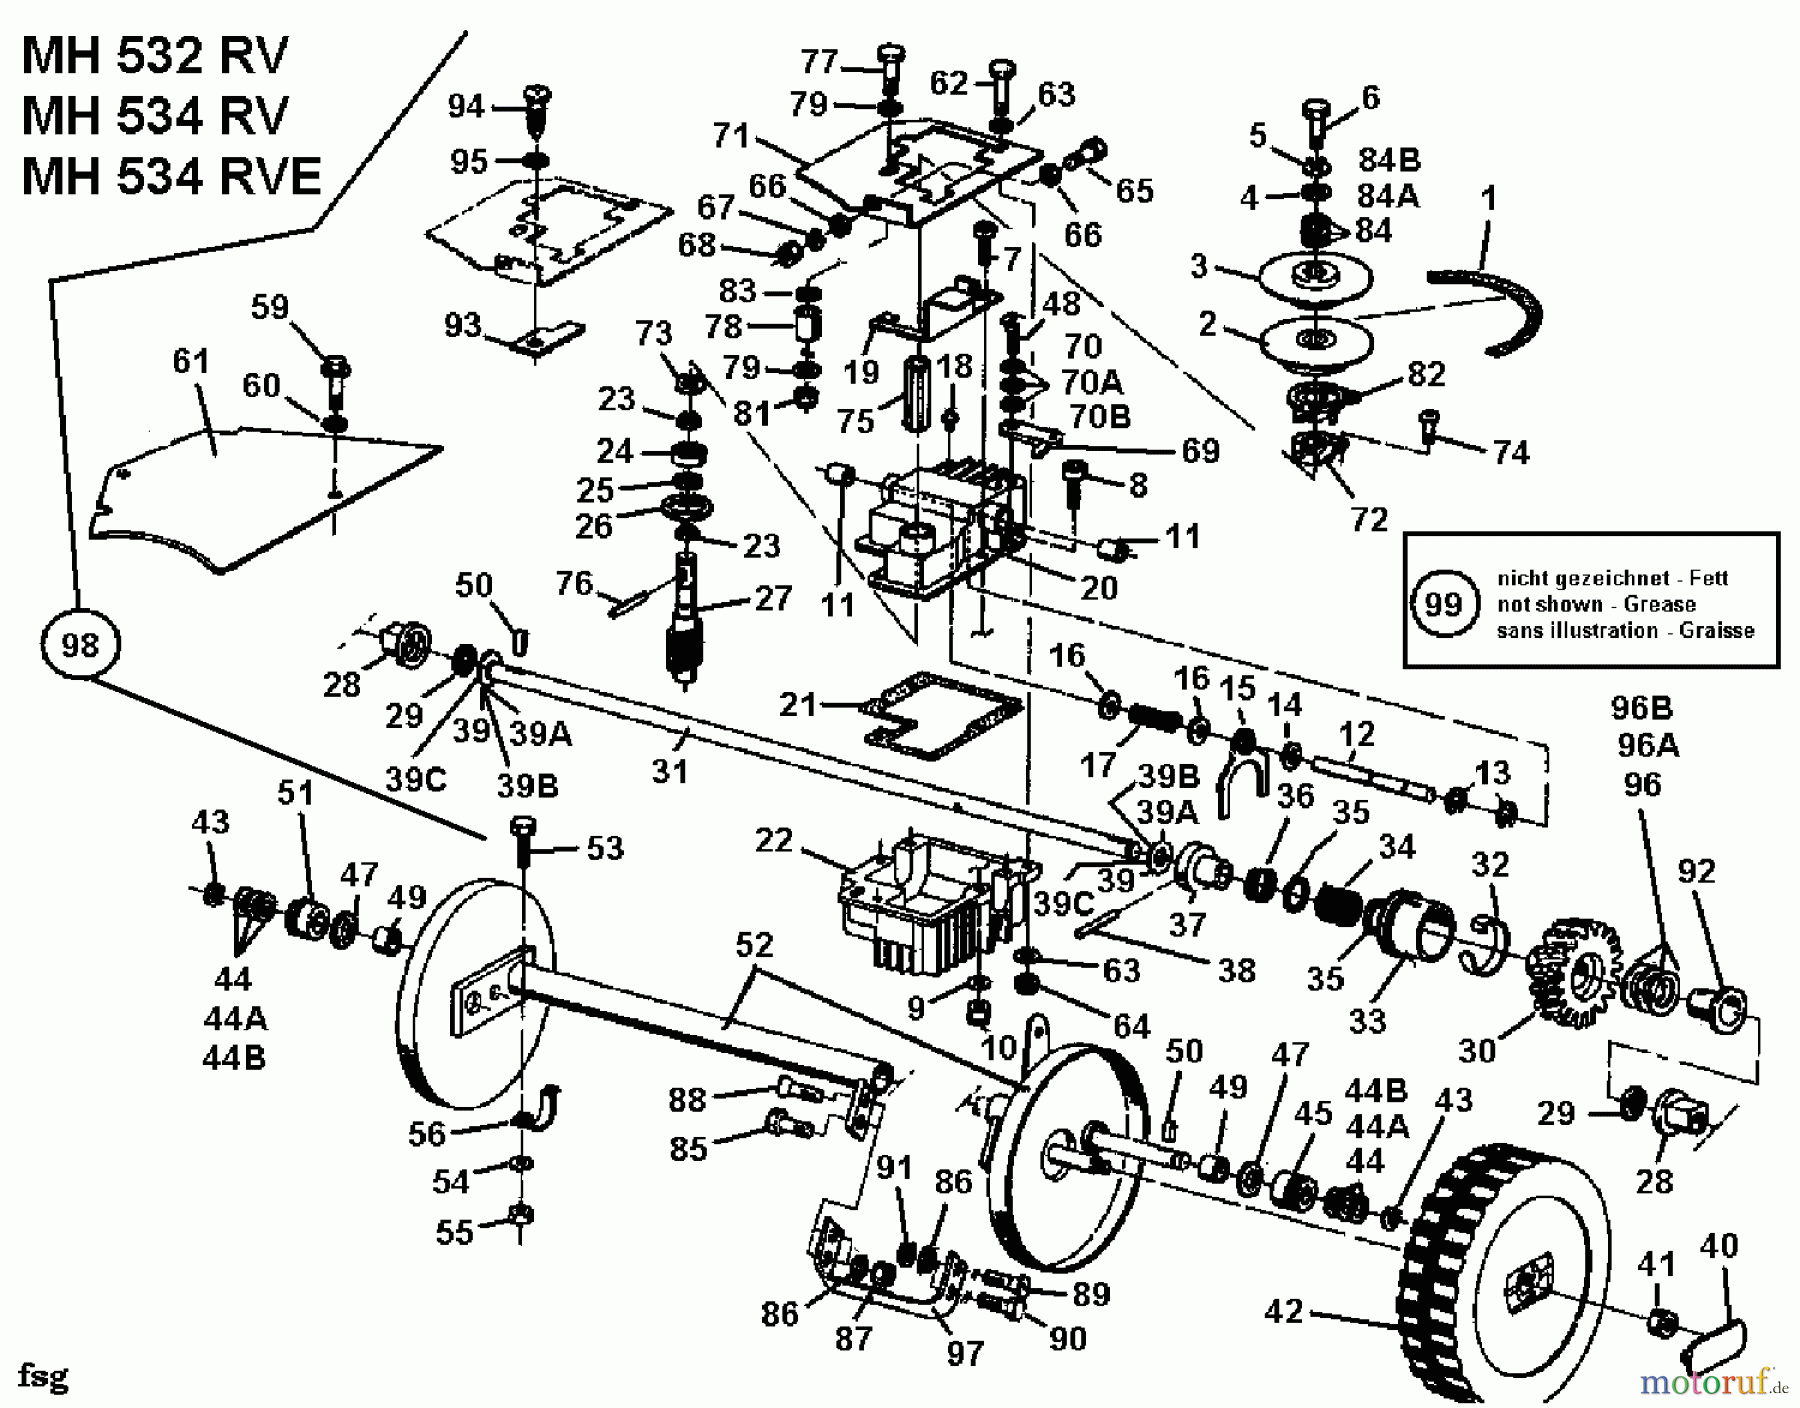  Gutbrod Motormäher mit Antrieb MH 534 RV 04007.02  (1995) Getriebe, Räder